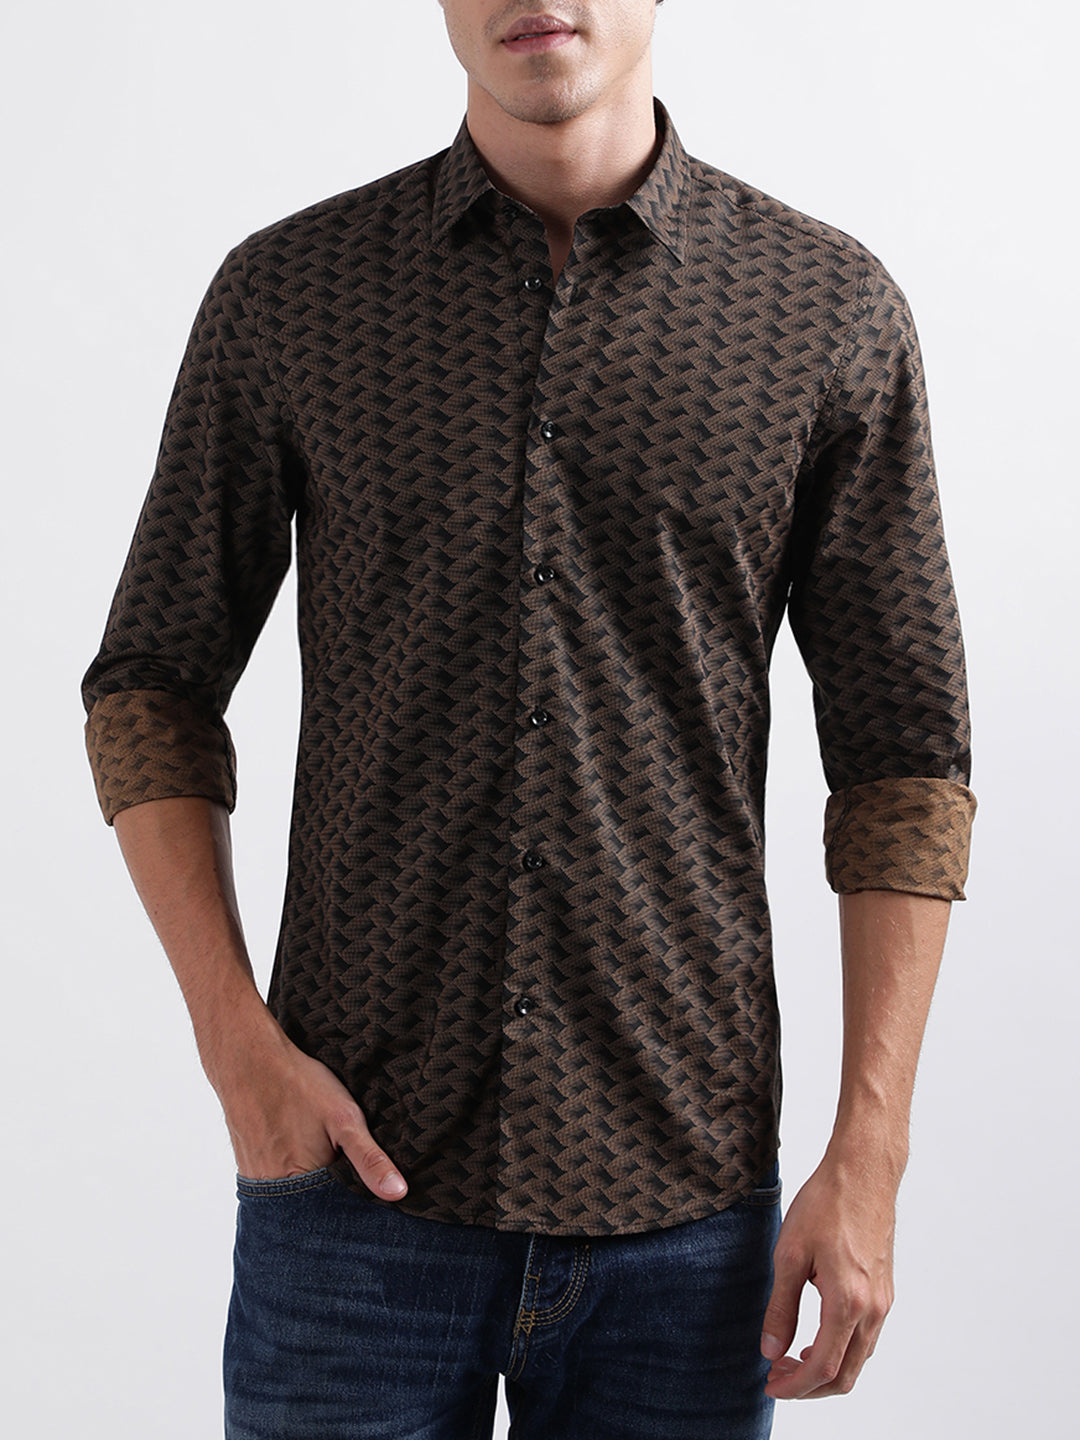 Regular Fit Patterned shirt - Dark beige/Leopard-print - Men